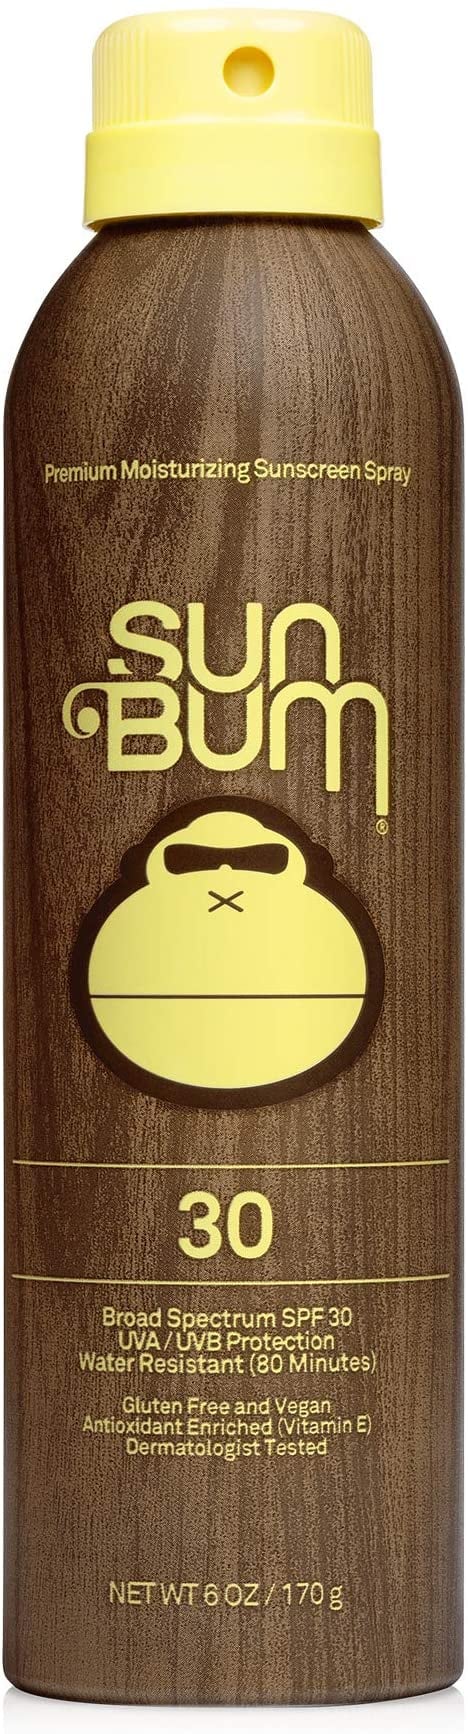 Sunscreen That Smells Good: Sun Bum Original SPF 30 Sunscreen Spray